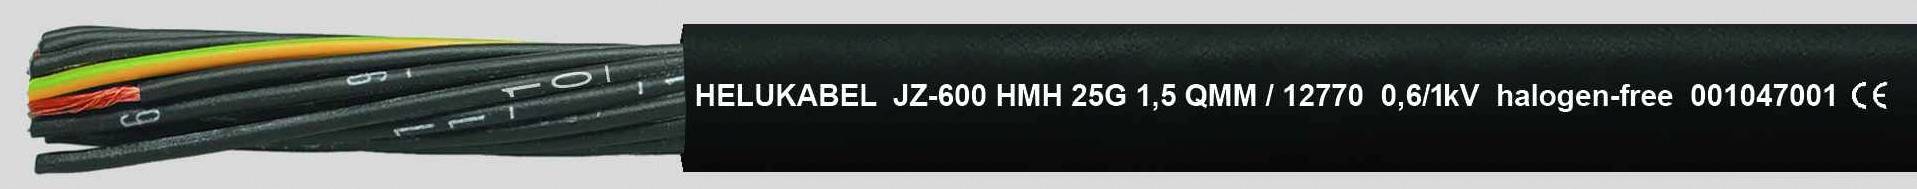 HELUKABEL JZ-600 HMH Steuerleitung 7 G 1.50 mm² Schwarz 12766-1000 1000 m